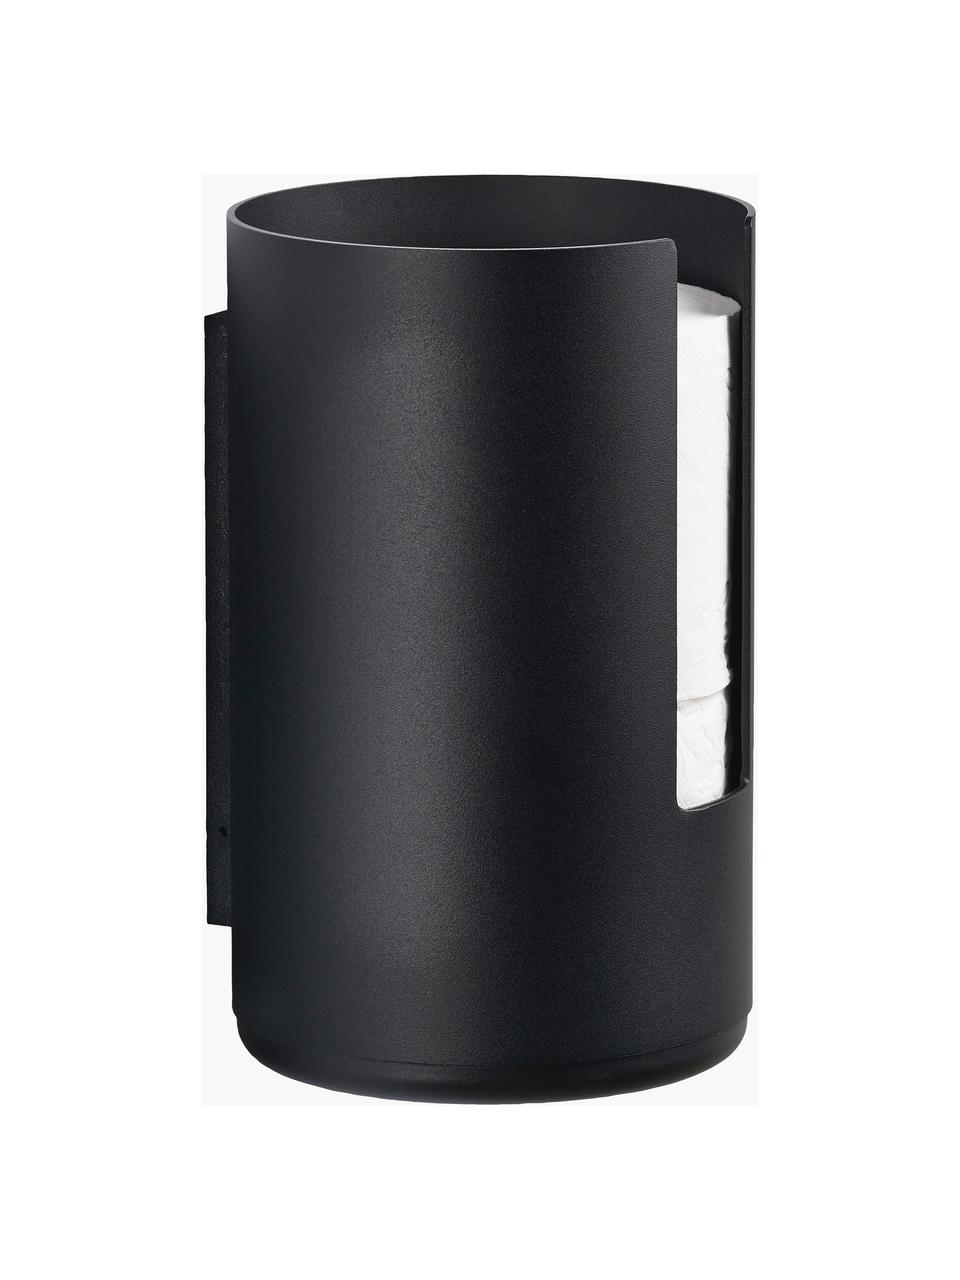 Uchwyt na papier toaletowy z metalu Rim, Aluminium powlekane, Czarny, W 22 cm